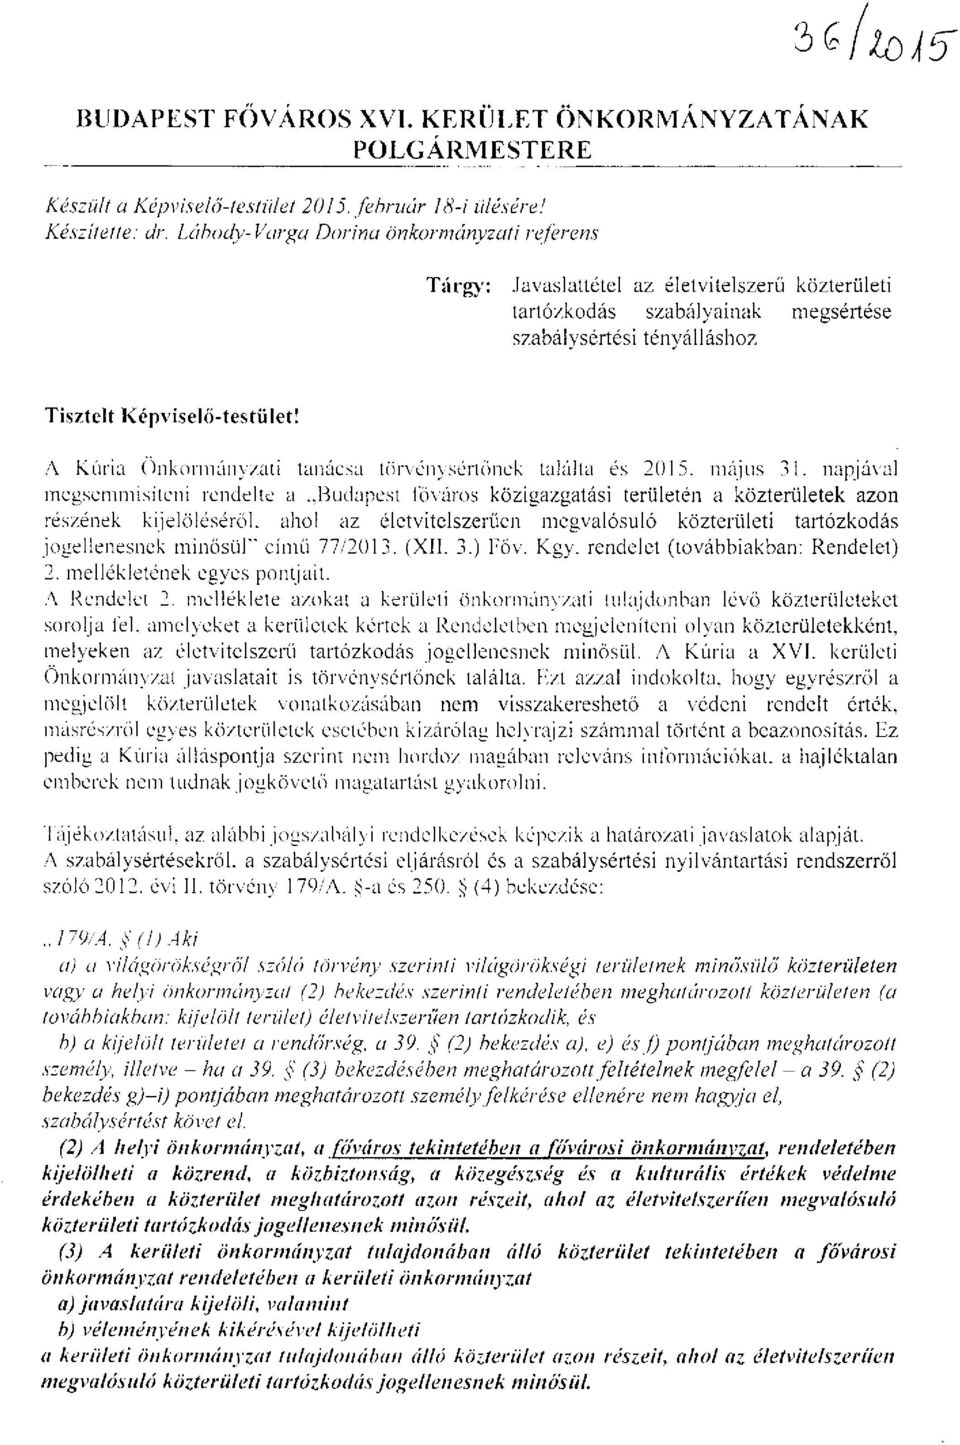 A Kúria Önkormányzati tanácsa törvénysértőnek találta és 2015. május 31. napjával megsemmisíteni rendelte a.